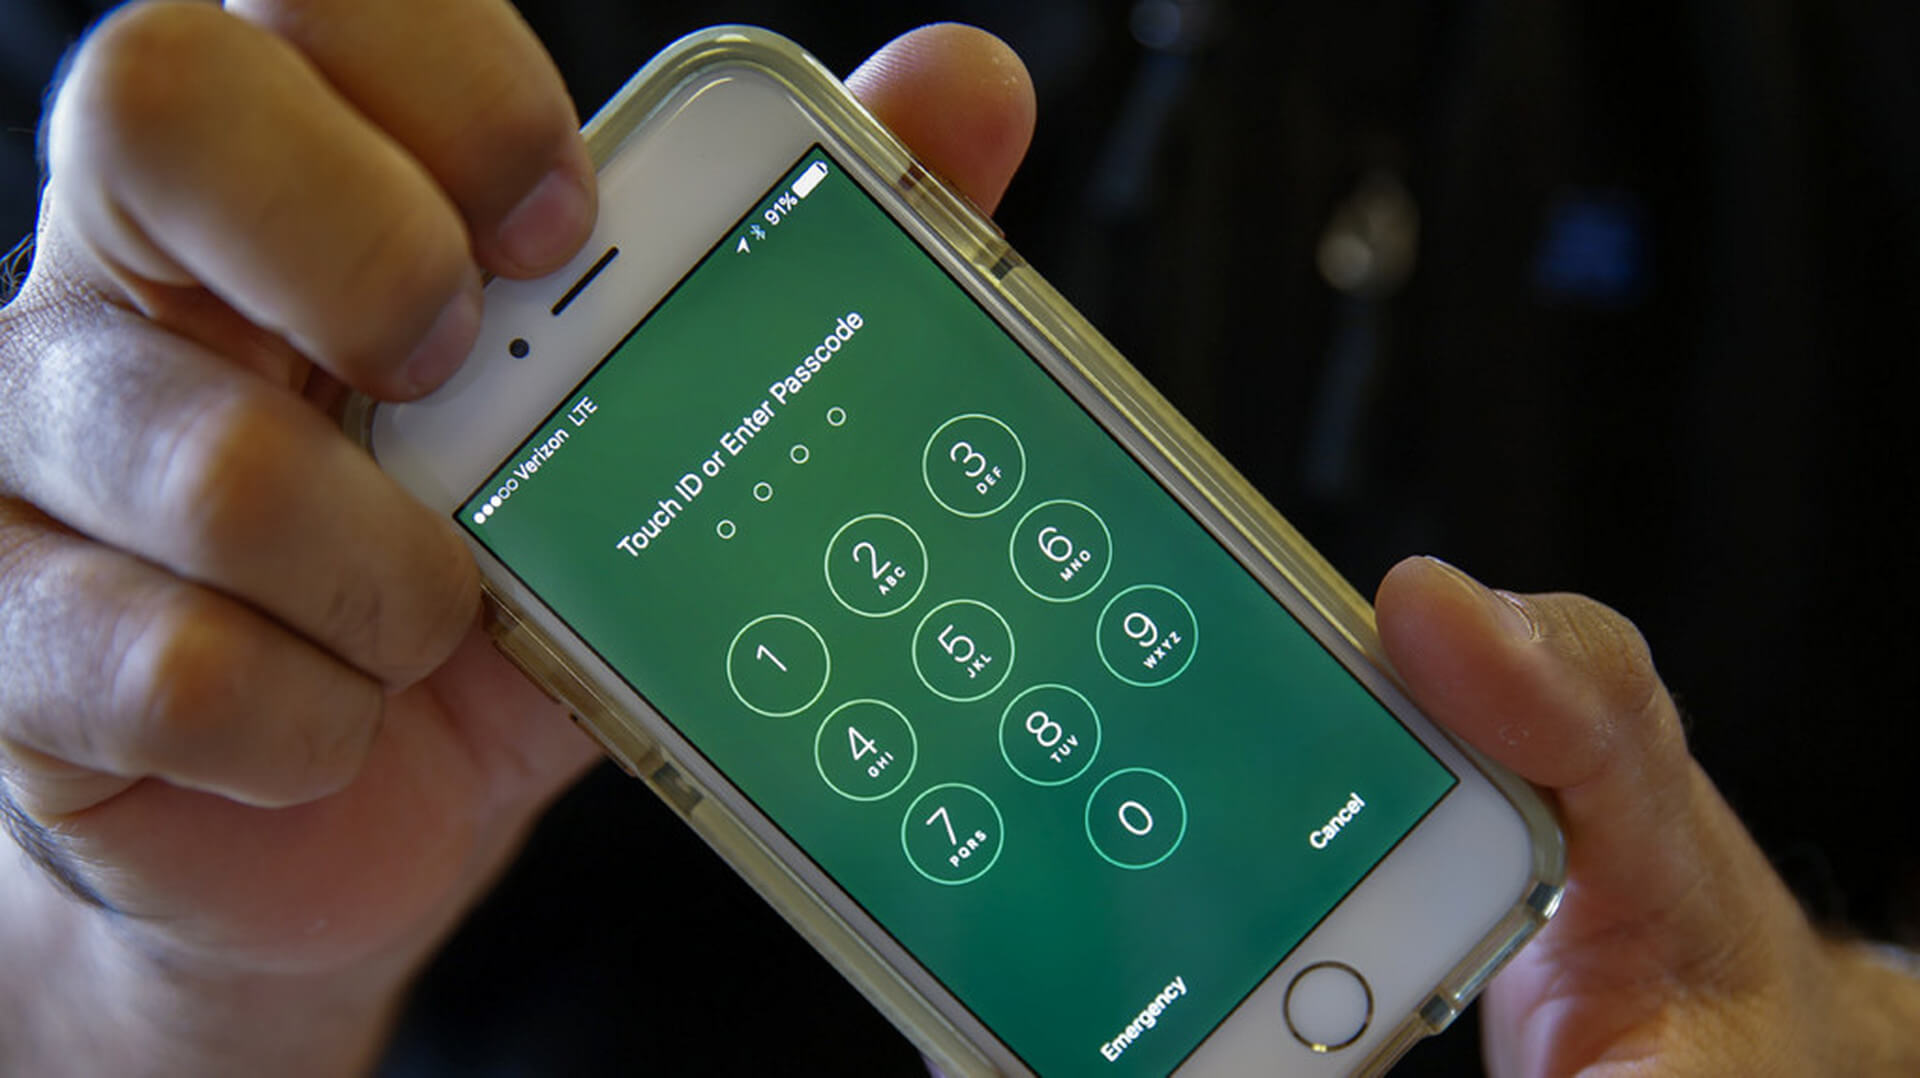 ФБР требует от Apple разблокировать iPhone. Снова